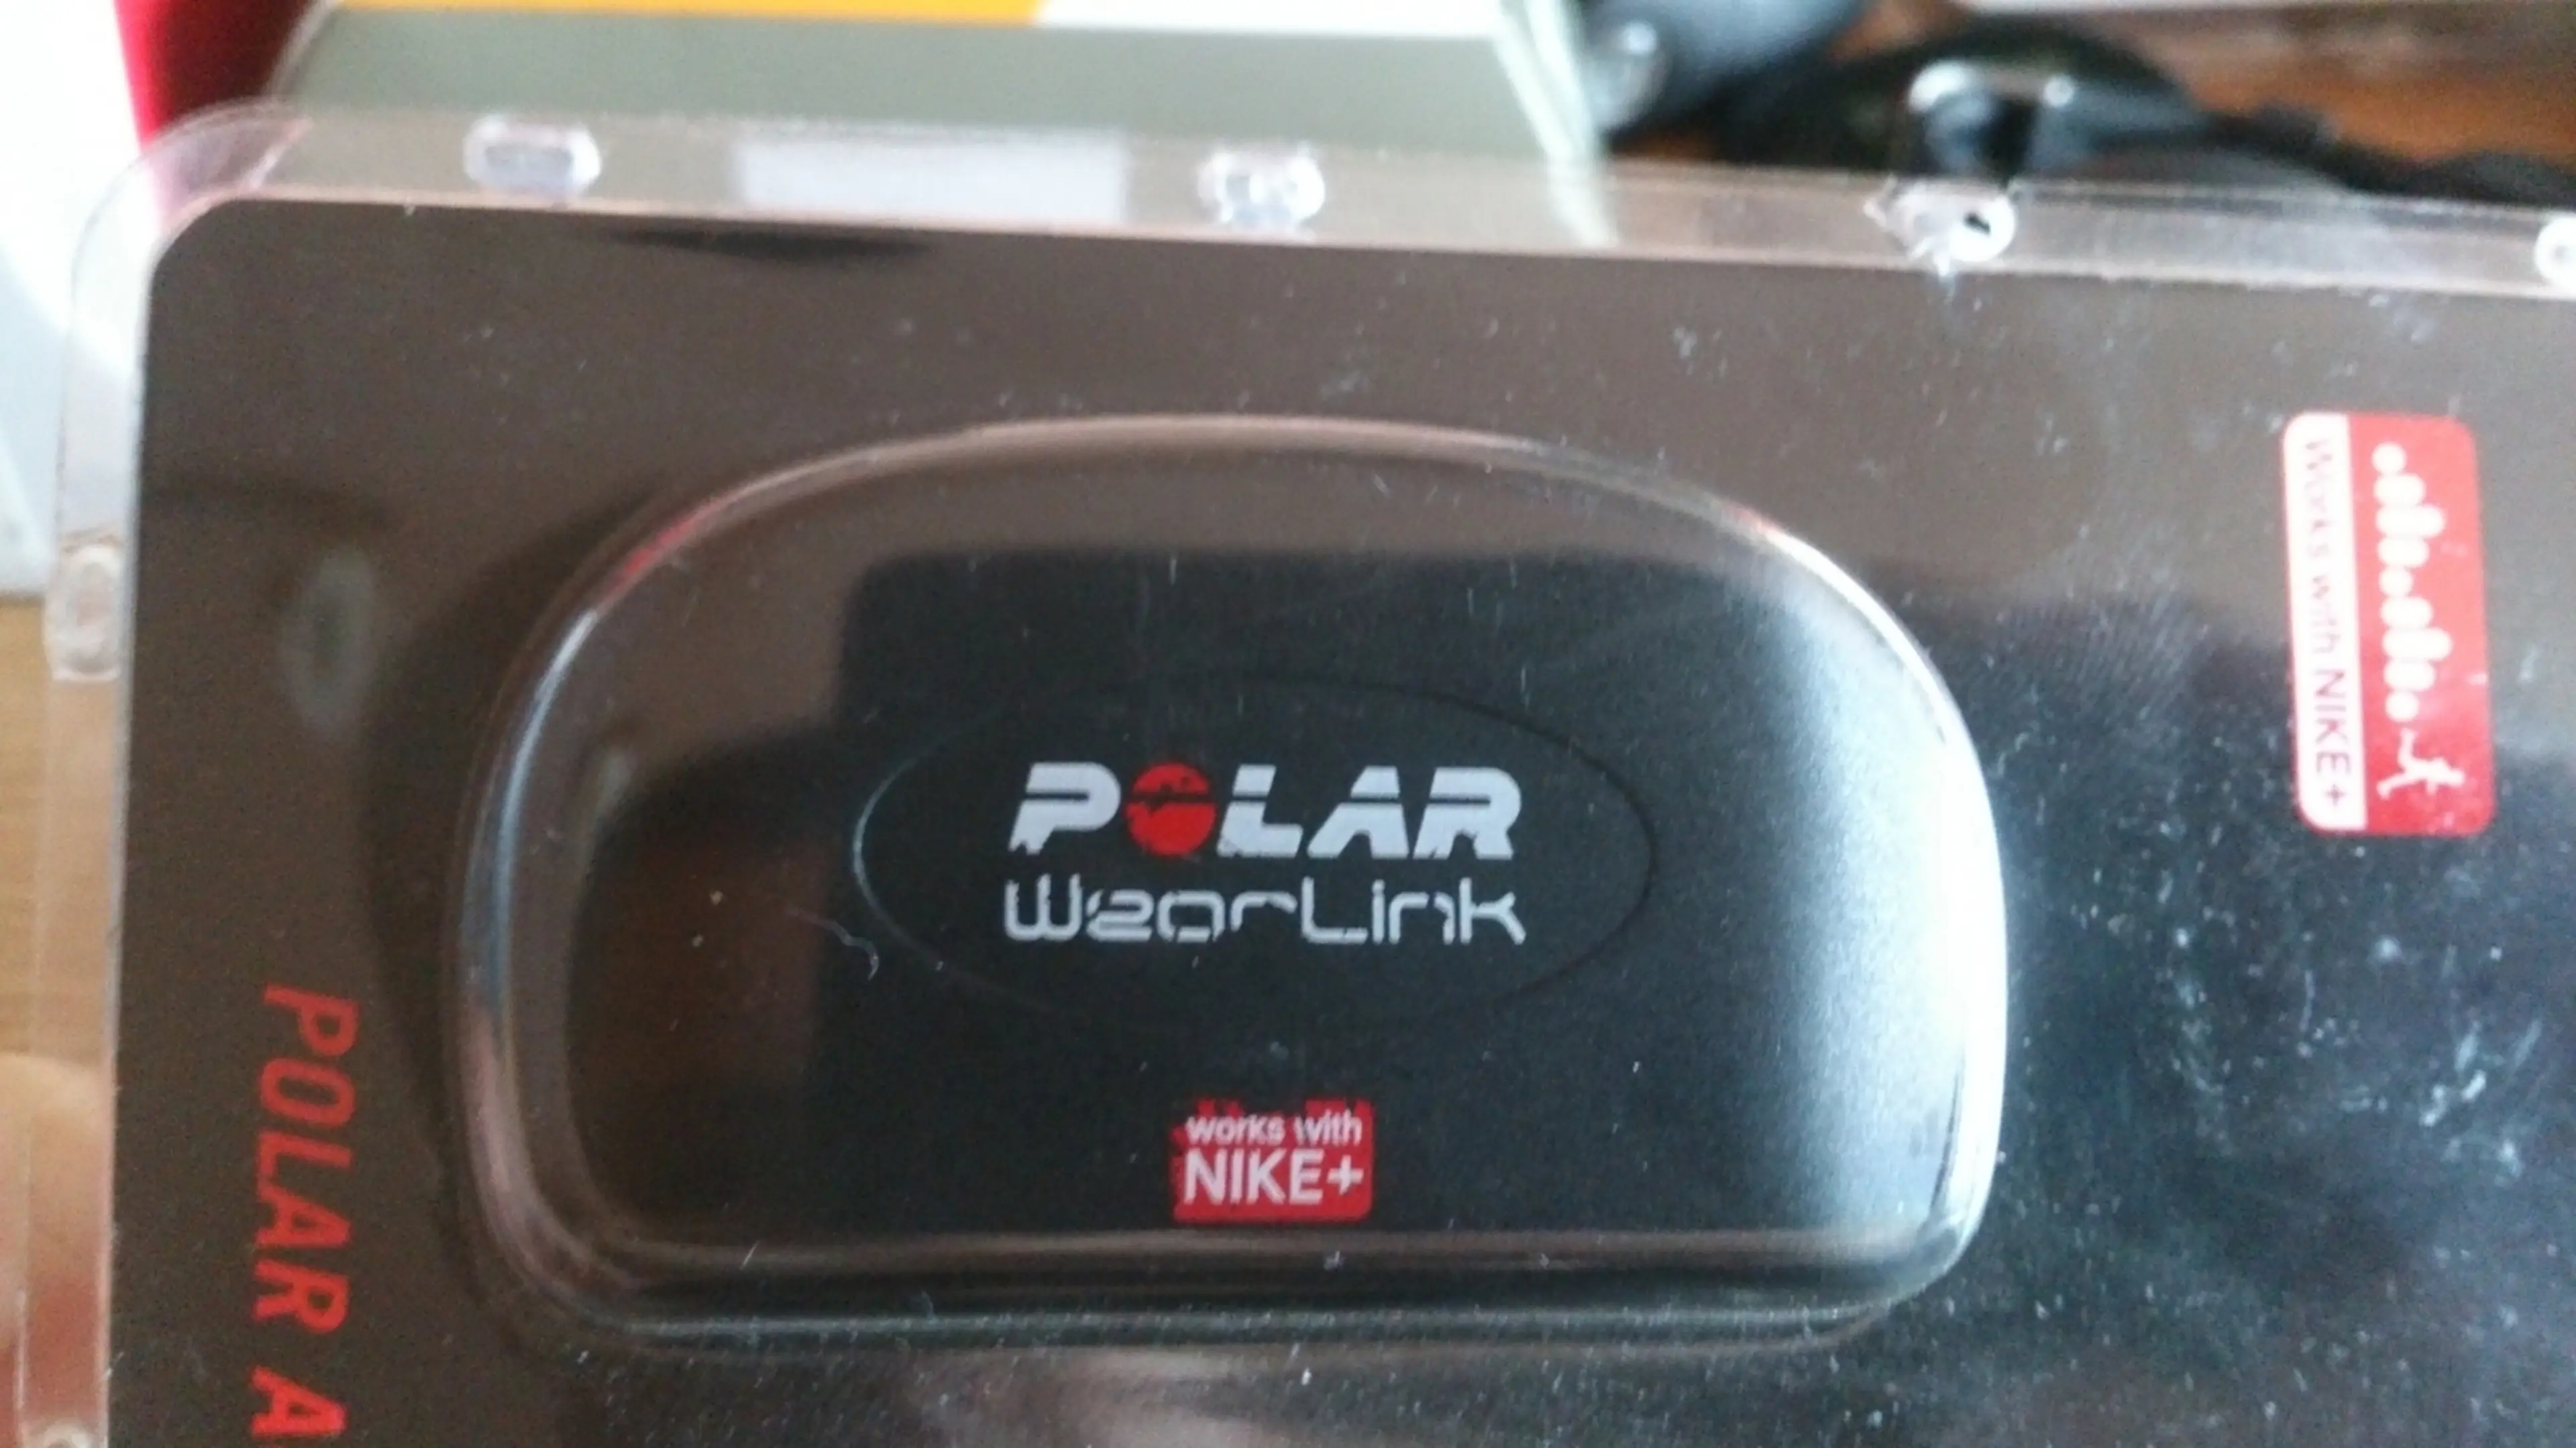 3. Centura Polar WearLink-Nike+